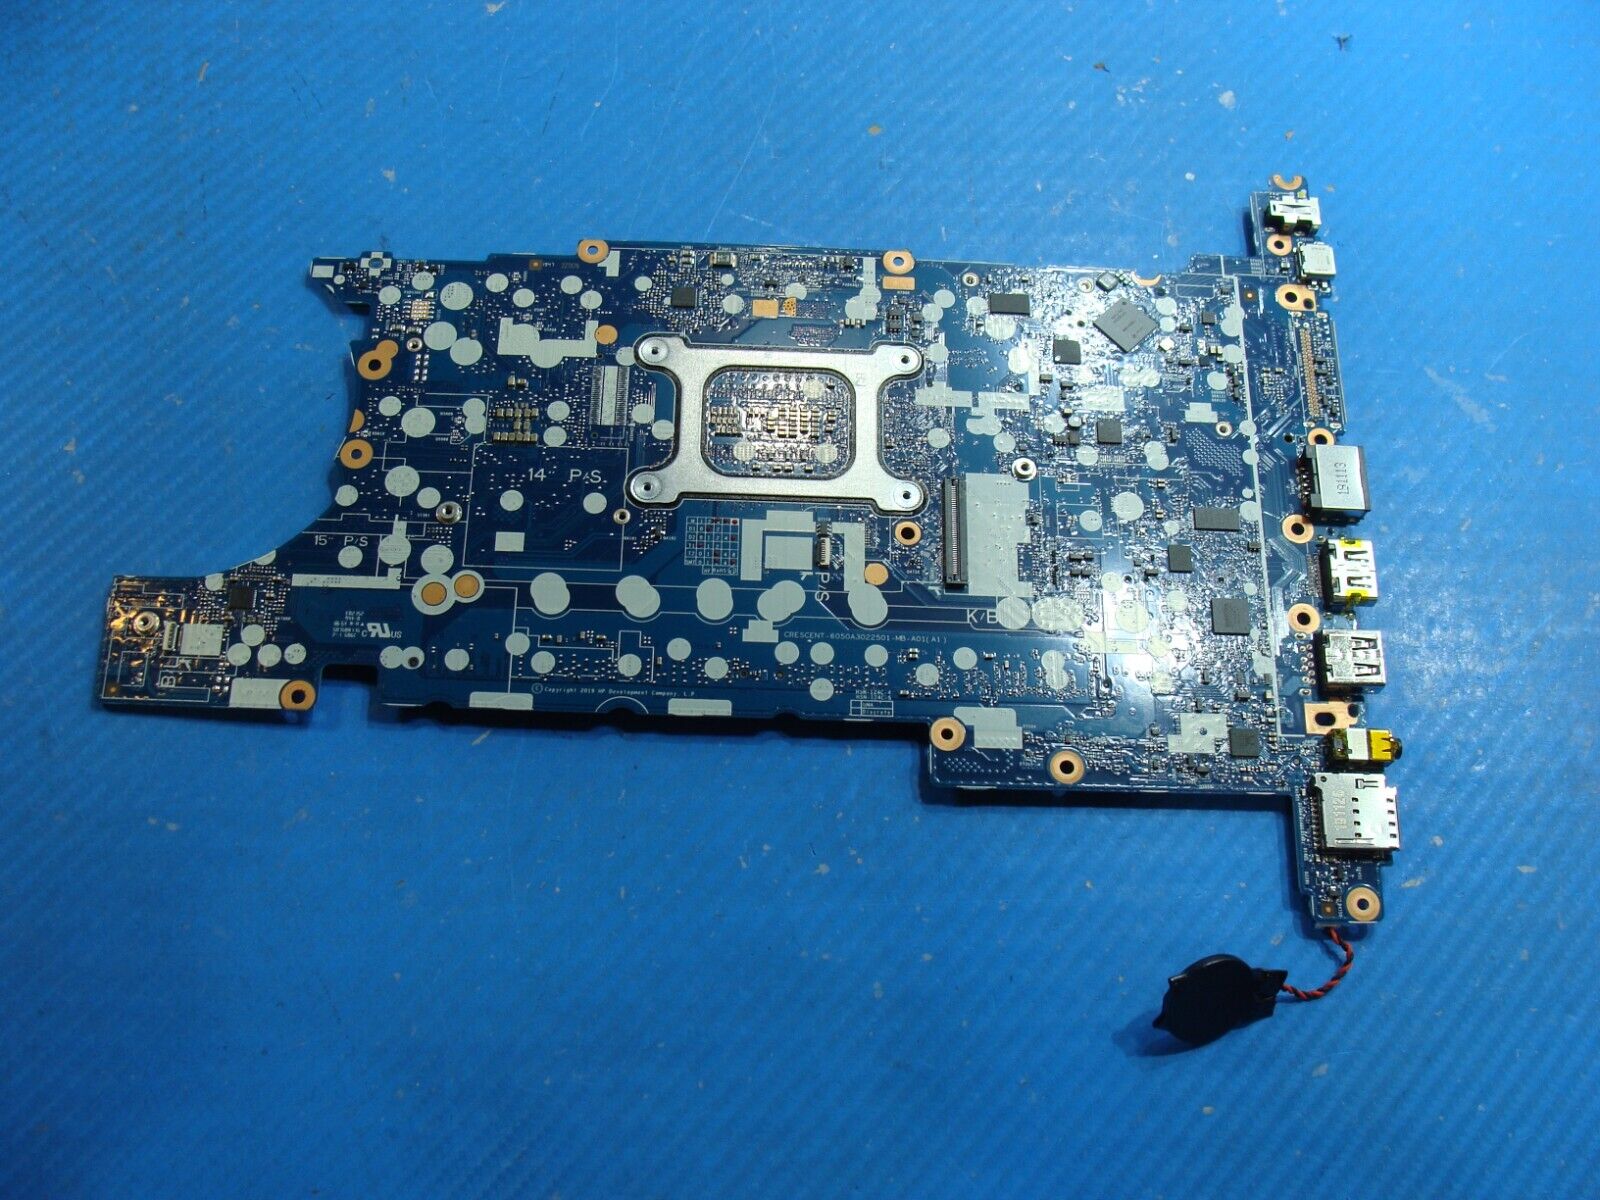 HP ZBook 15.6” 15u G6 i5-8265U AMD Radeon Pro WX3200 4GB Motherboard L64076-601